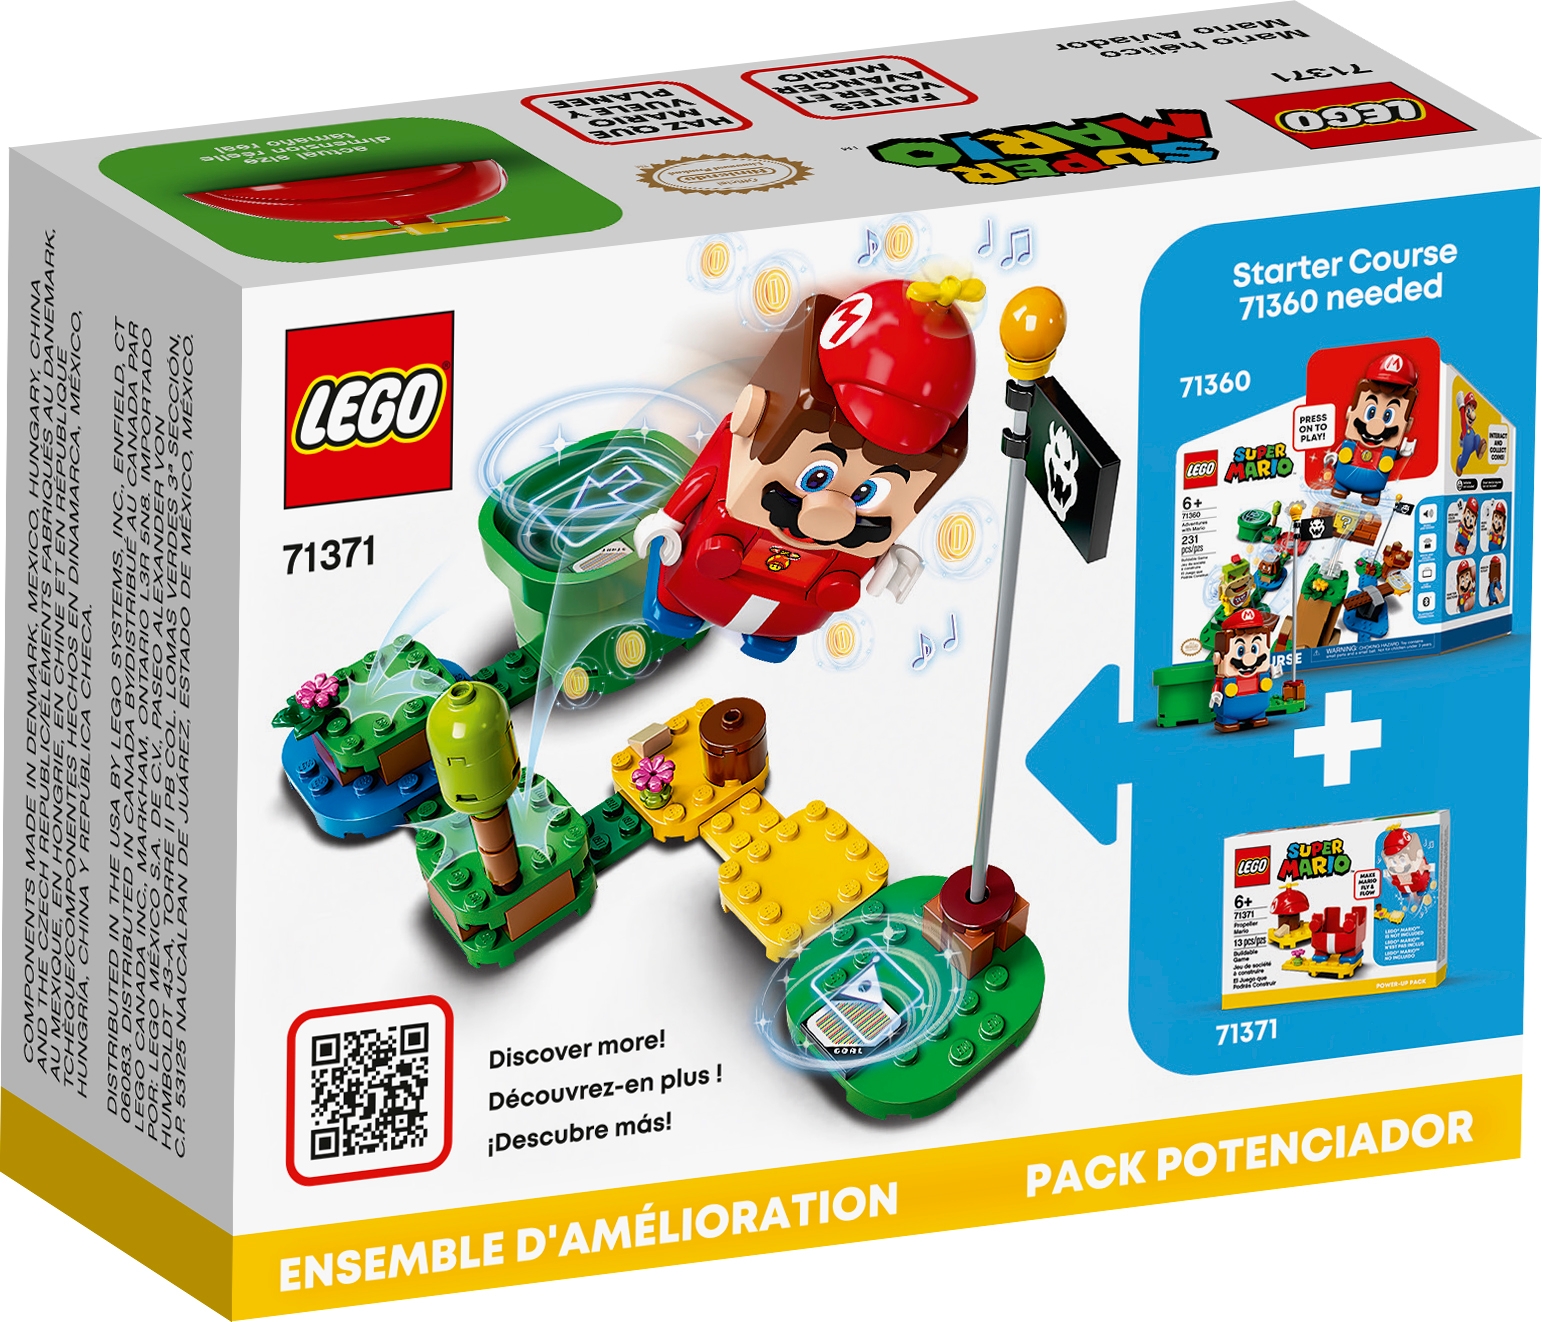 LEGO Lot Of 4 Sets 71370 71371 71372 71373 Super Mario Cat Propeller Fire Build